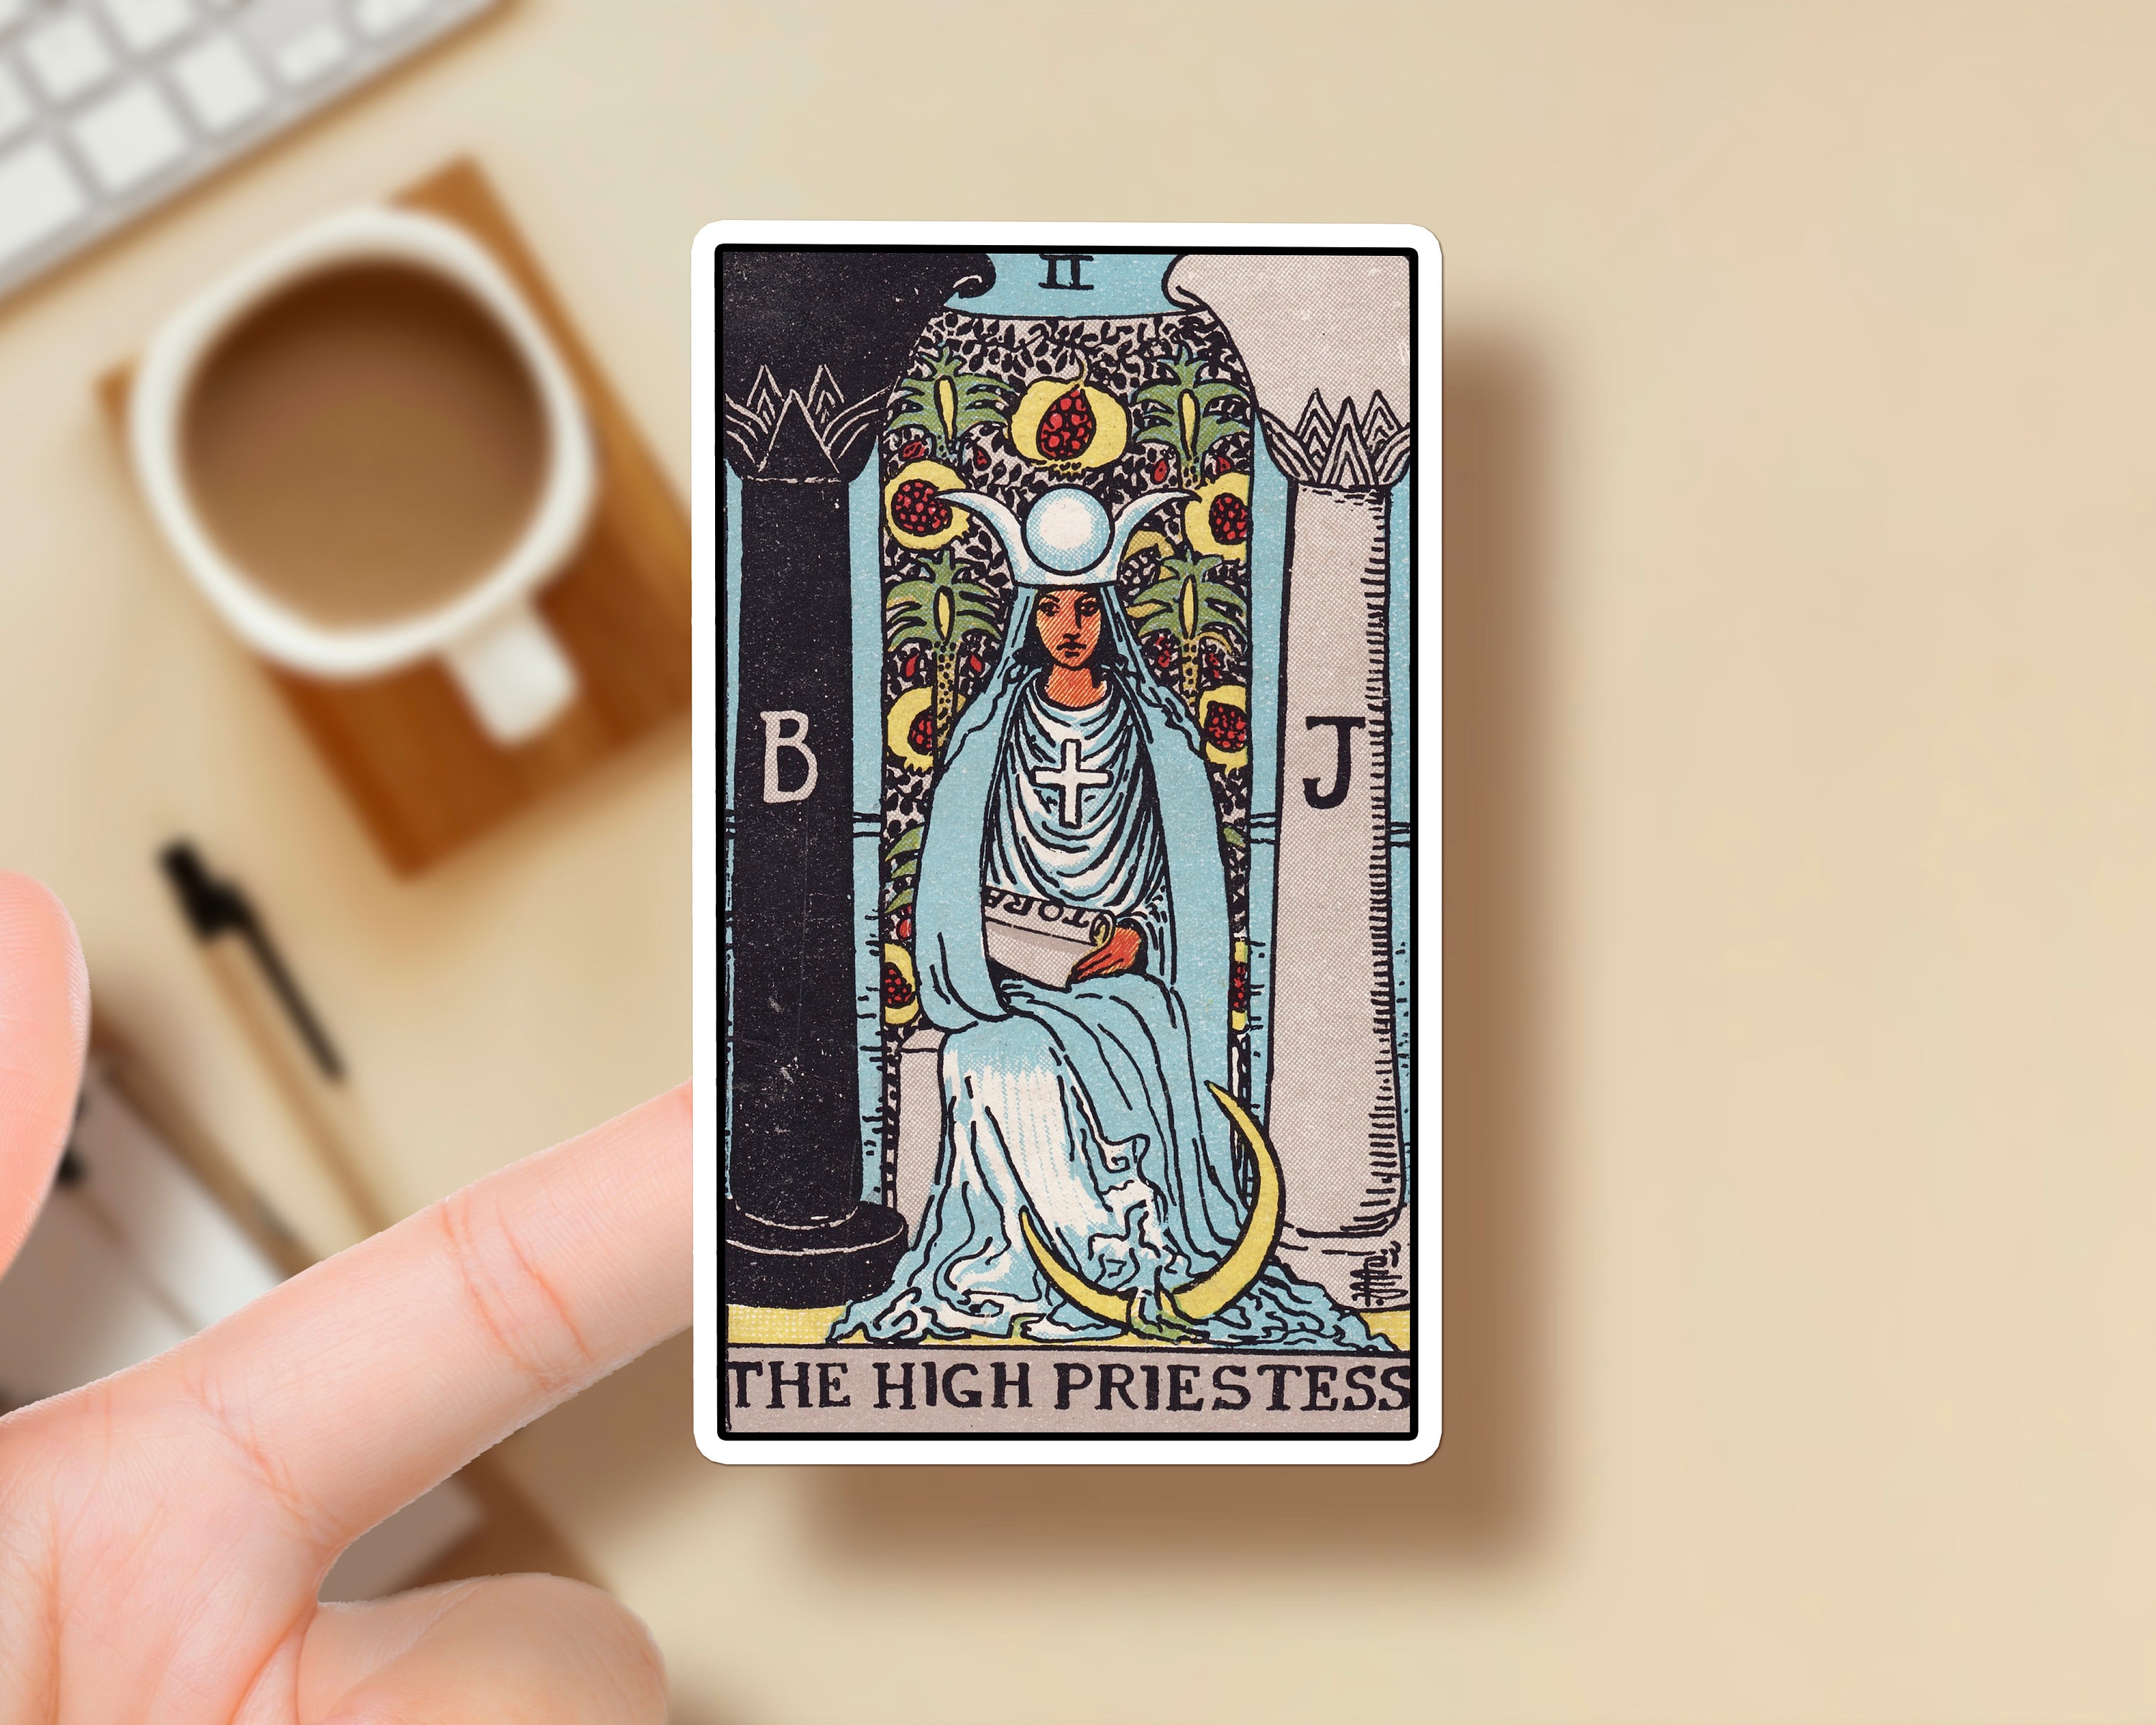 The Fool Tarot Sticker - Becca